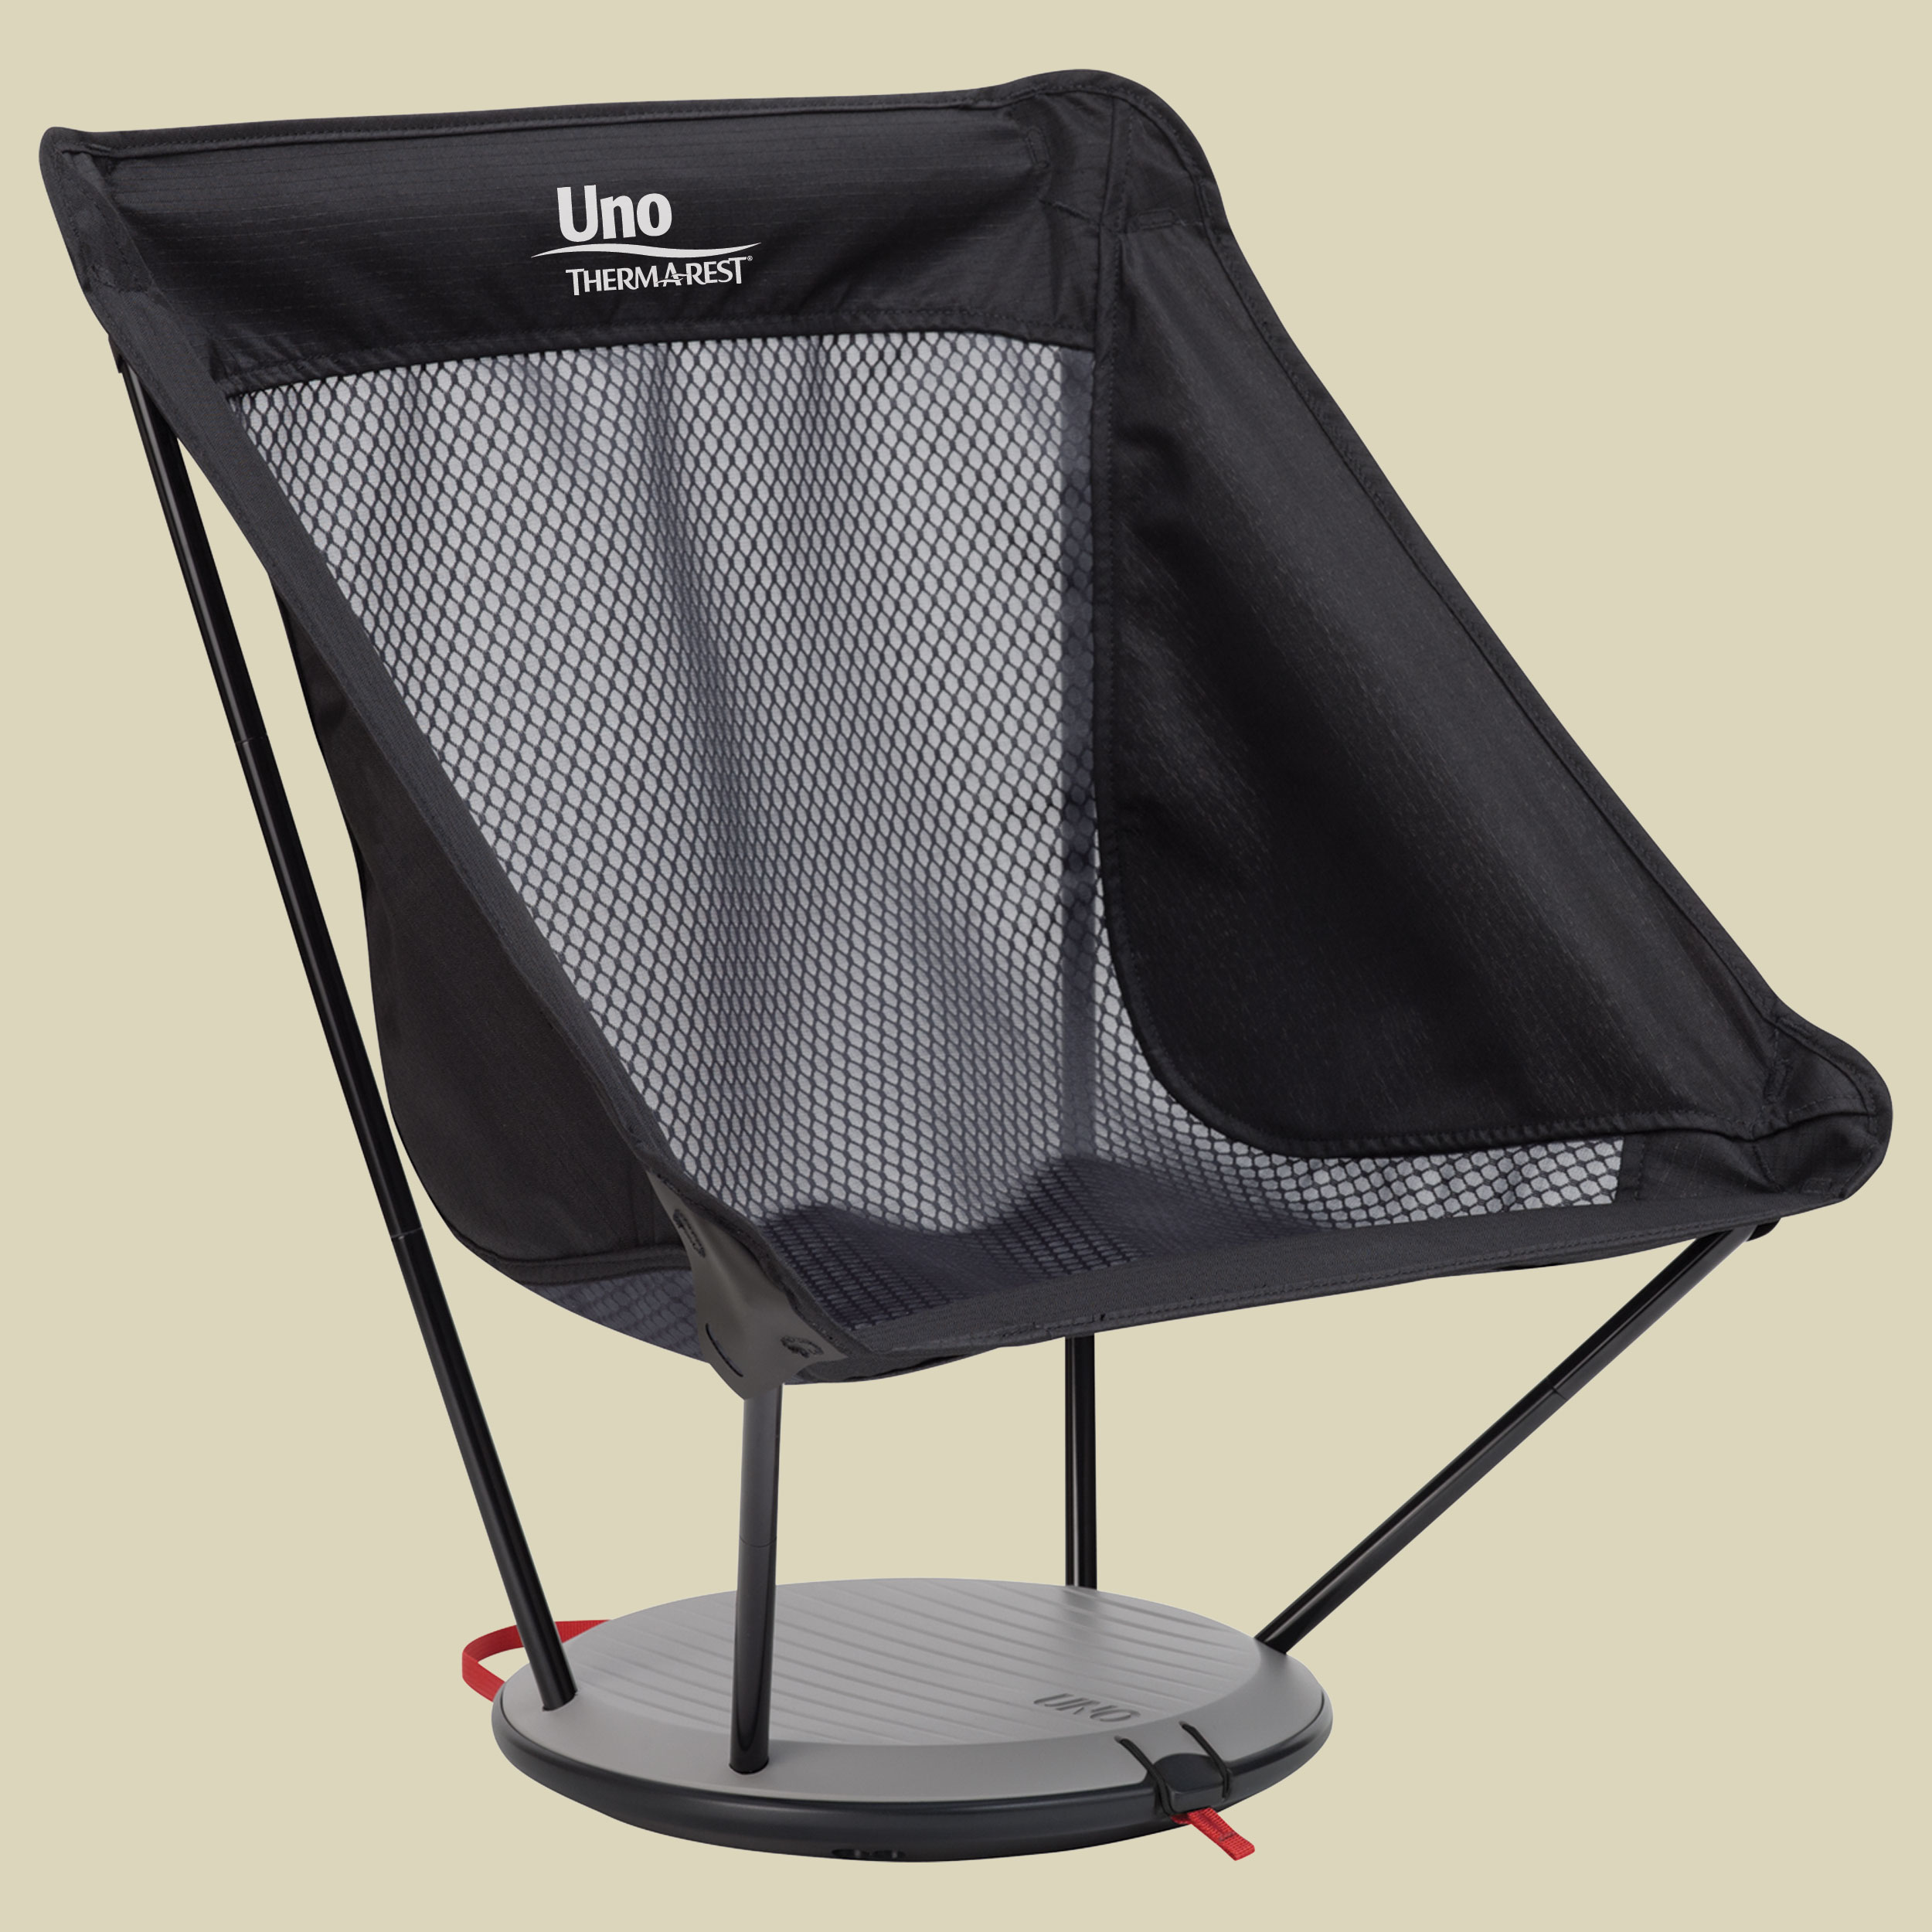 Uno Chair Größe one size Farbe black